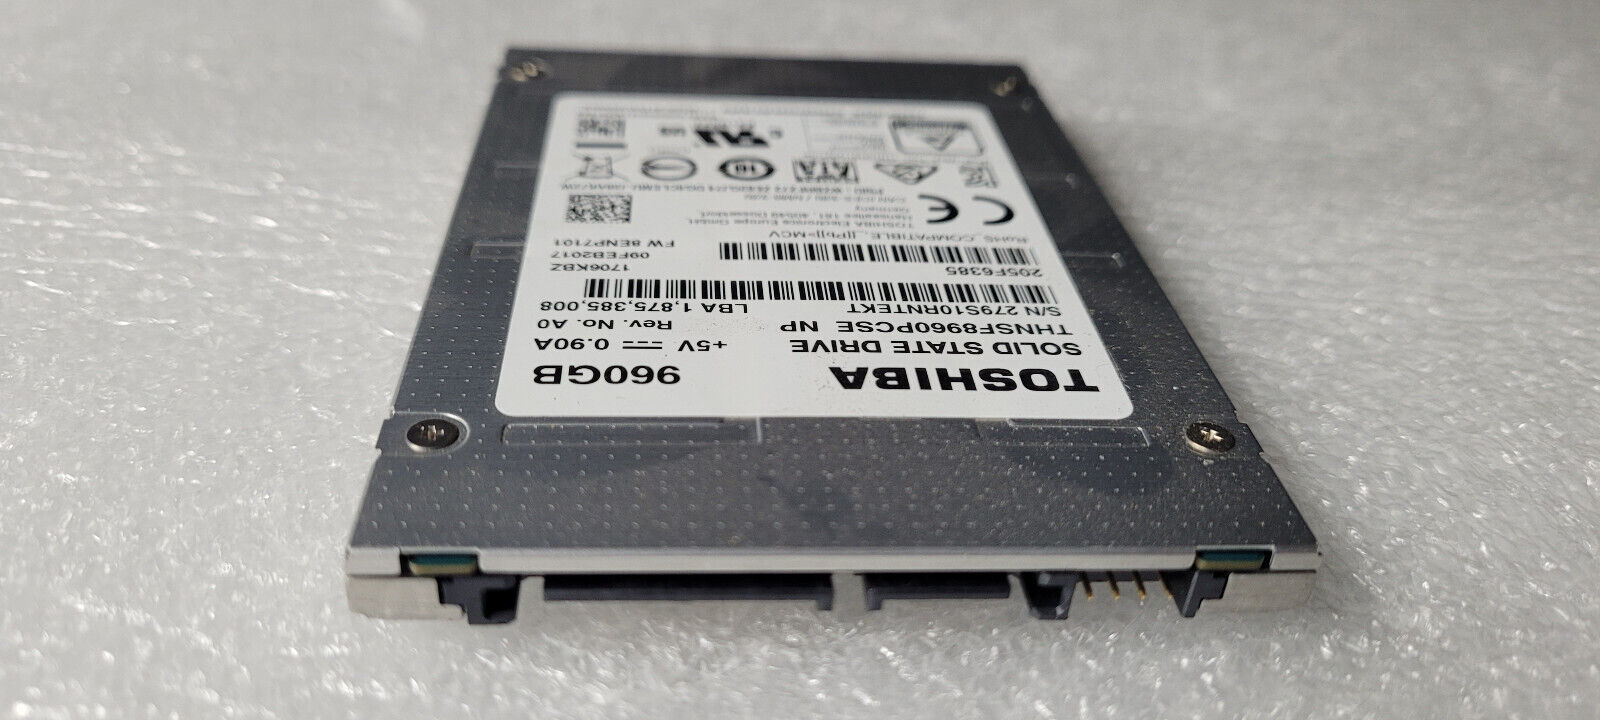 Toshiba 960GB THNSF8960PCSE SSD 2.5